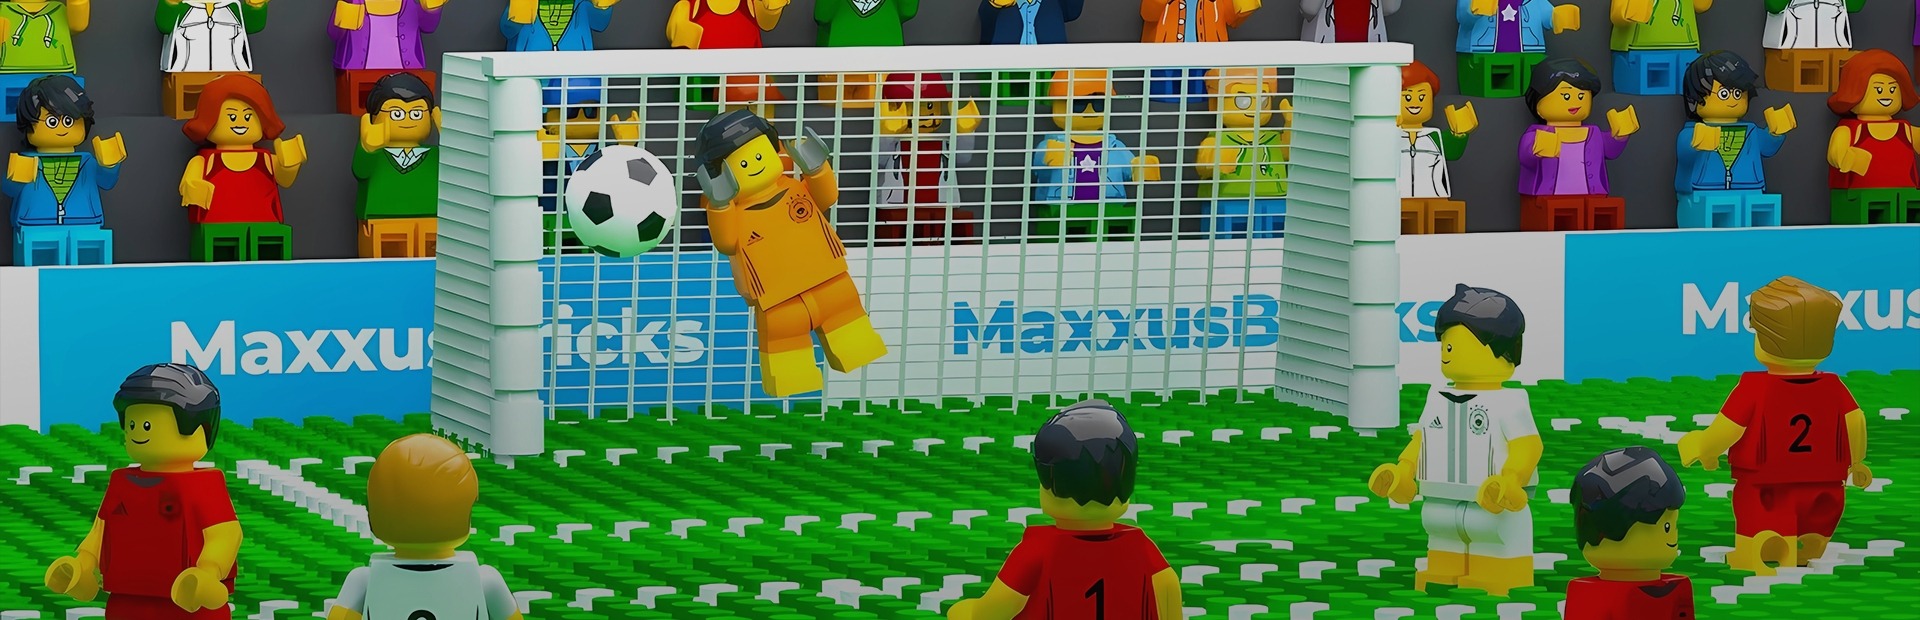 Lego Football game, 'LEGO 2K Goooal!', seemingly rated in Korea